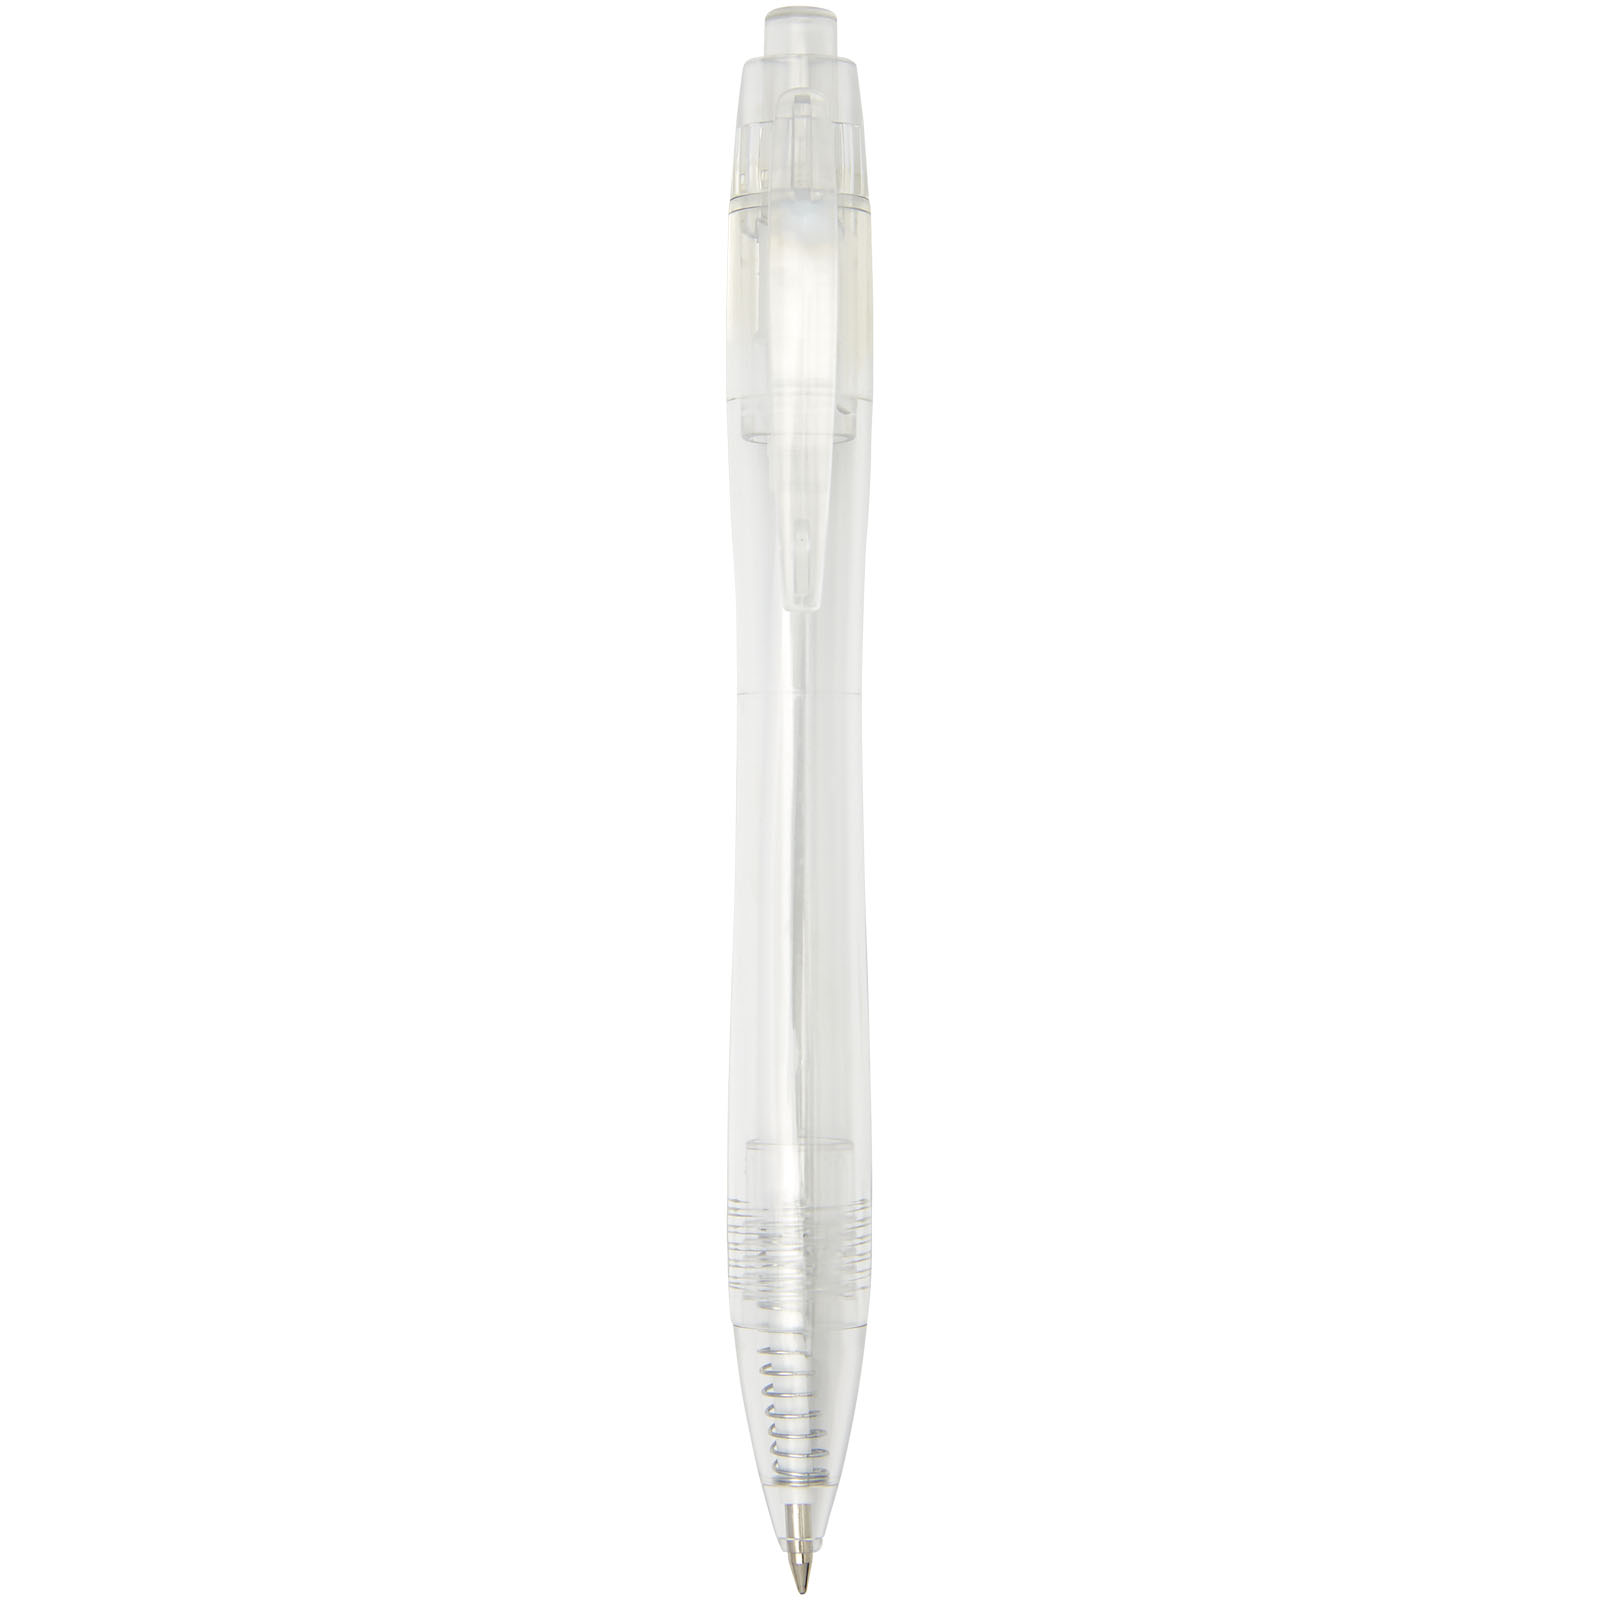 Advertising Ballpoint Pens - Alberni RPET ballpoint pen - 1